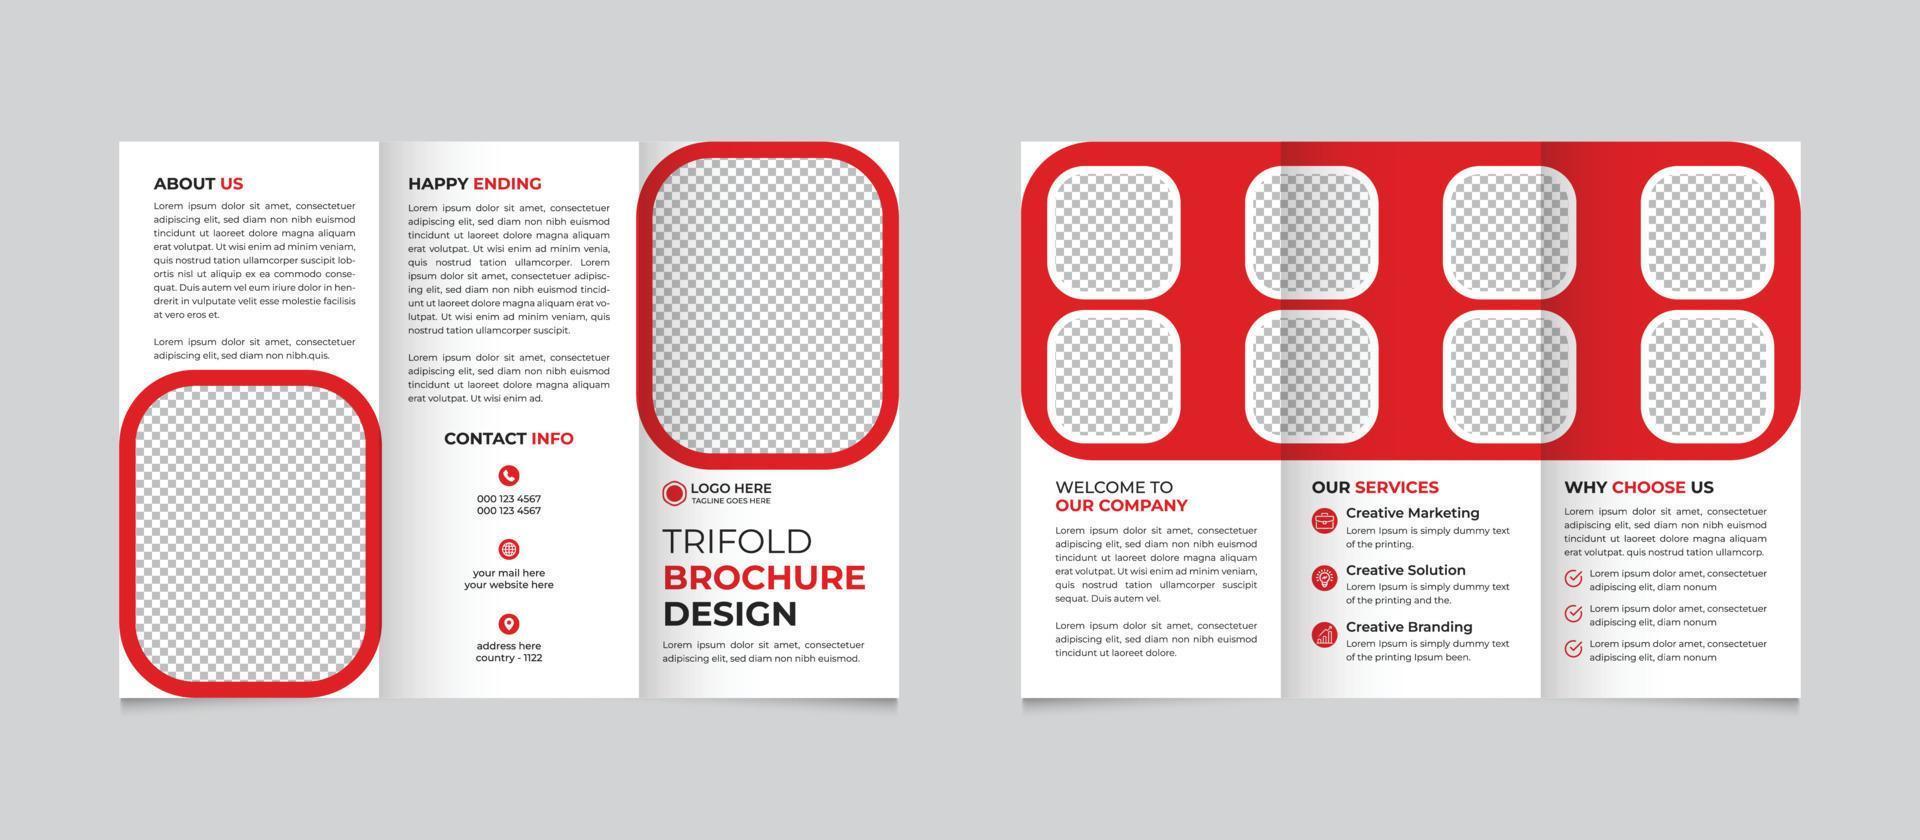 moderno, creativo, y profesional tríptico folleto diseño modelo gratis vector